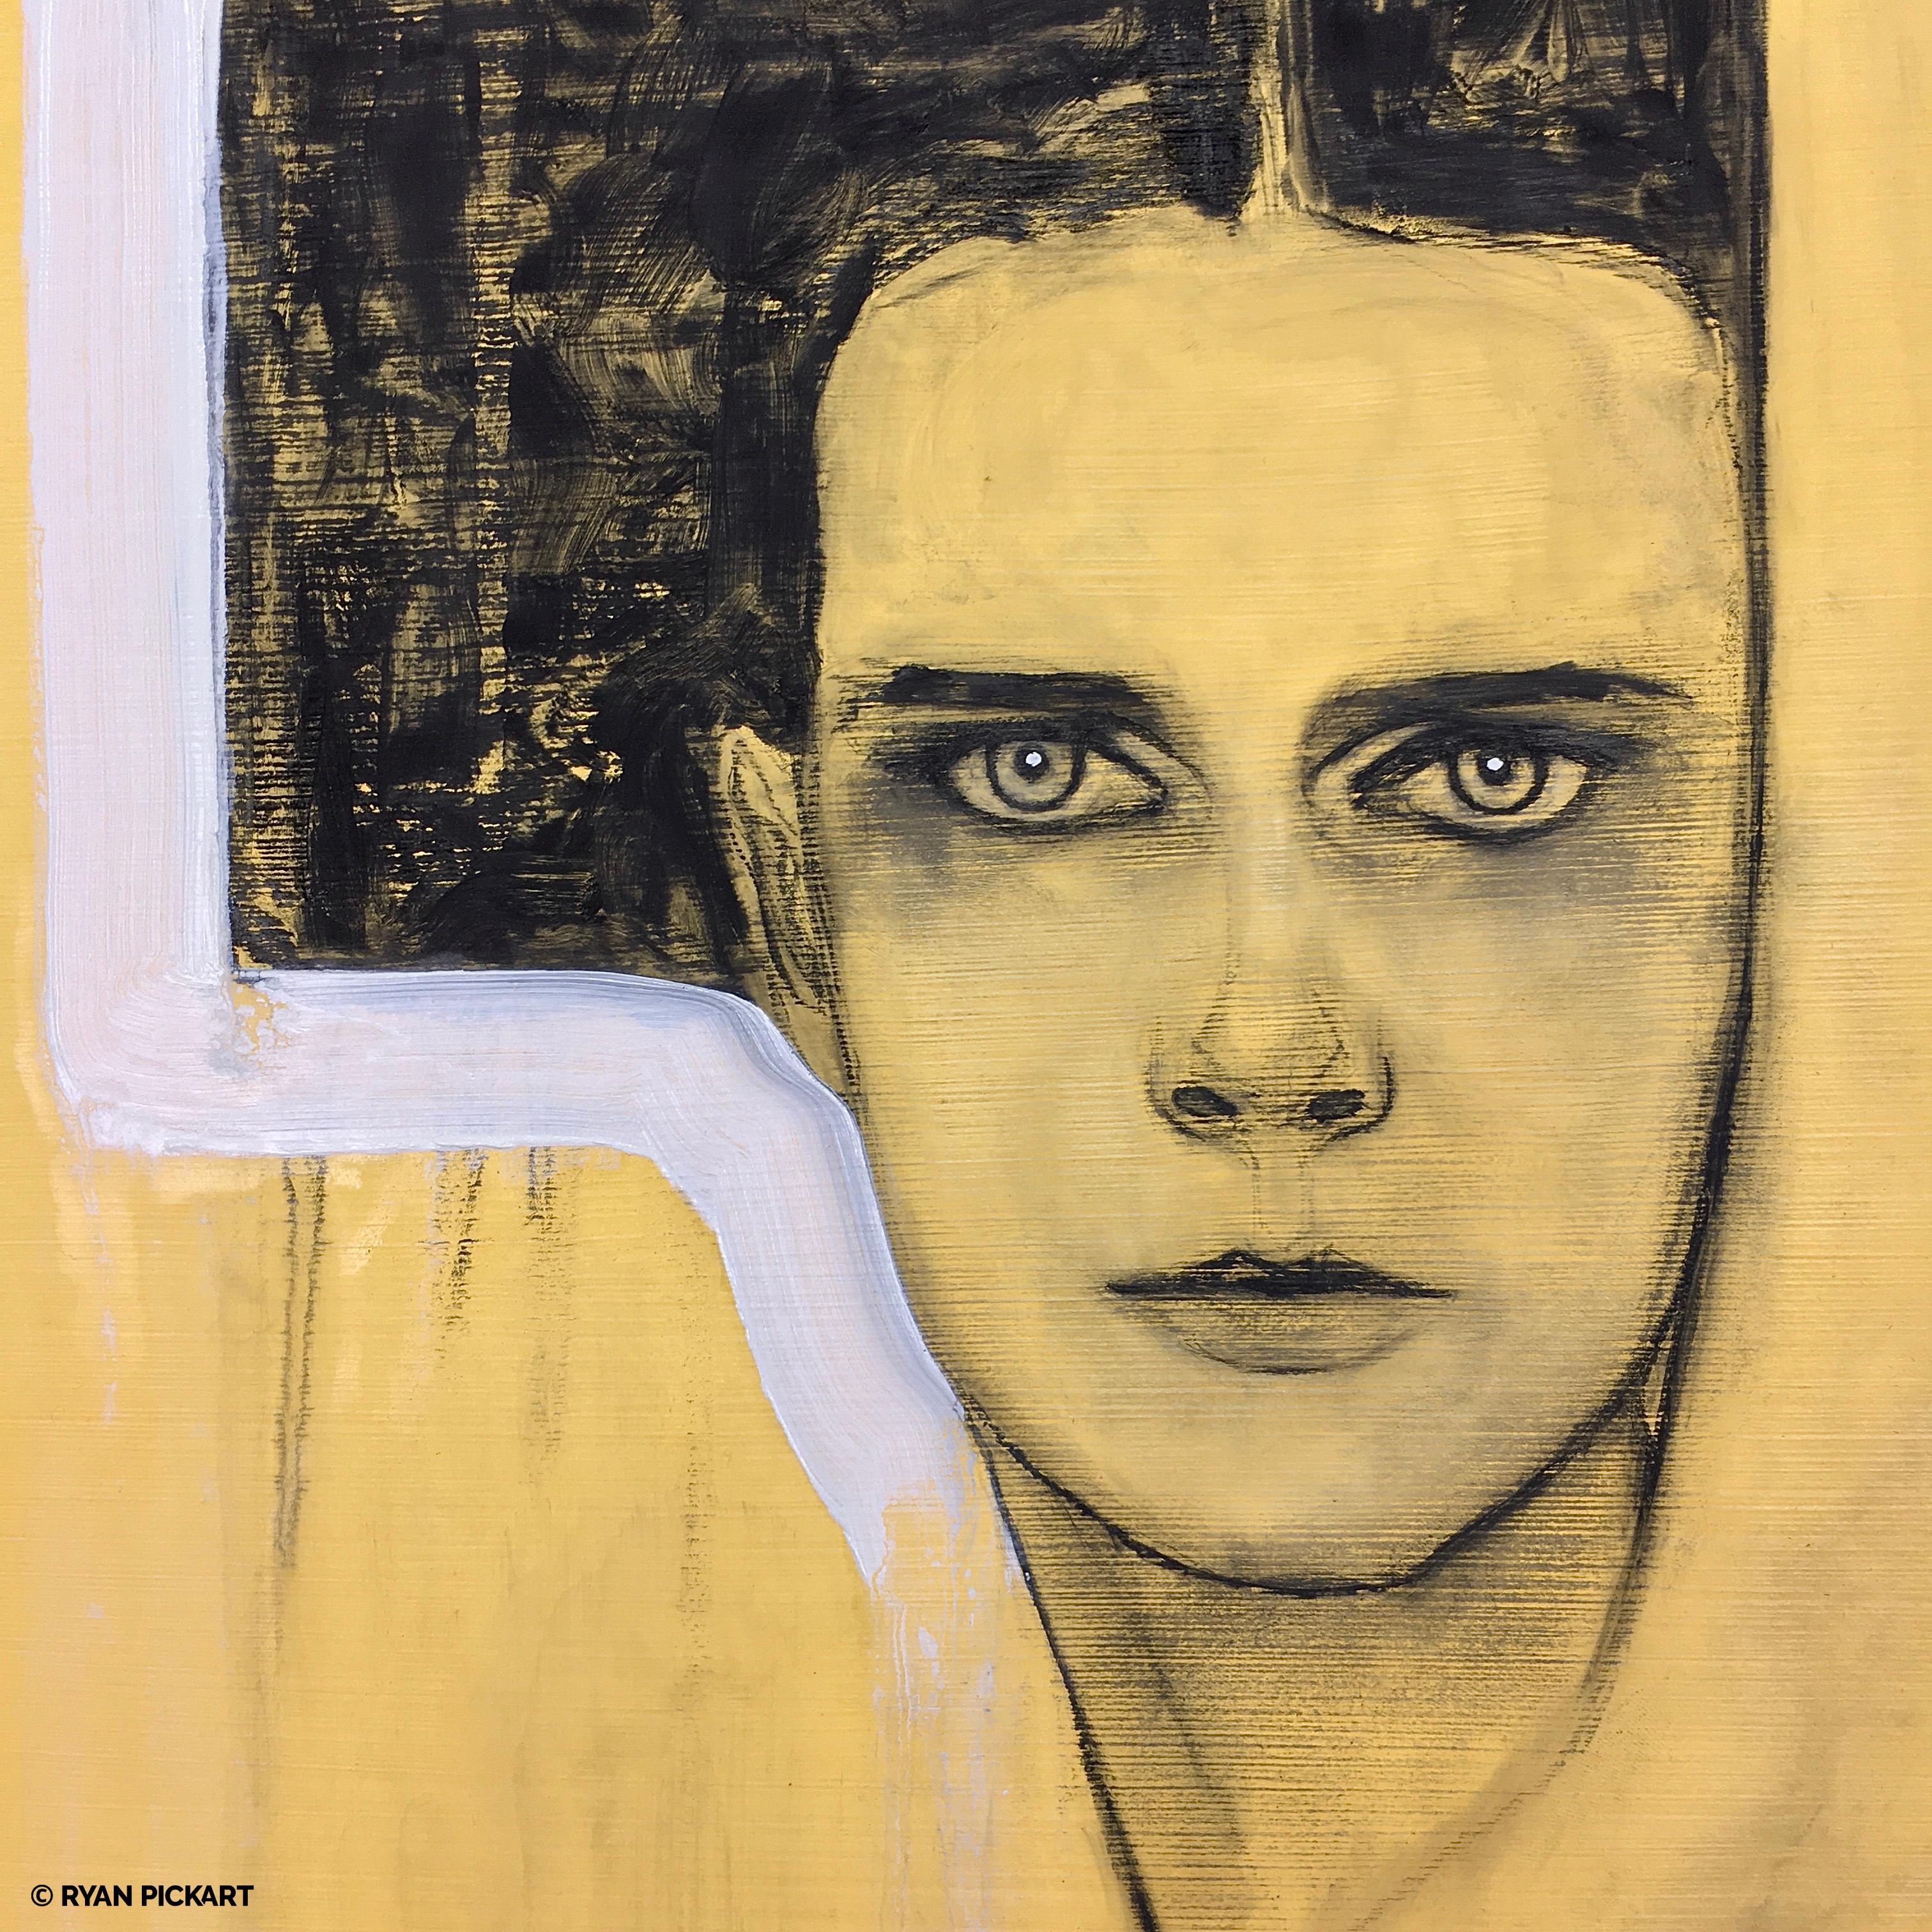 <p>Kommentare des Künstlers<br />Teil von Ryans langjähriger Serie von Porträts in Kohle und Ölfarbe auf goldgewaschenem Papier. Ryan liebt es, die Flüssigkeit und Transparenz der Ölfarbe mit der Substanz der Holzkohle zu verbinden. 